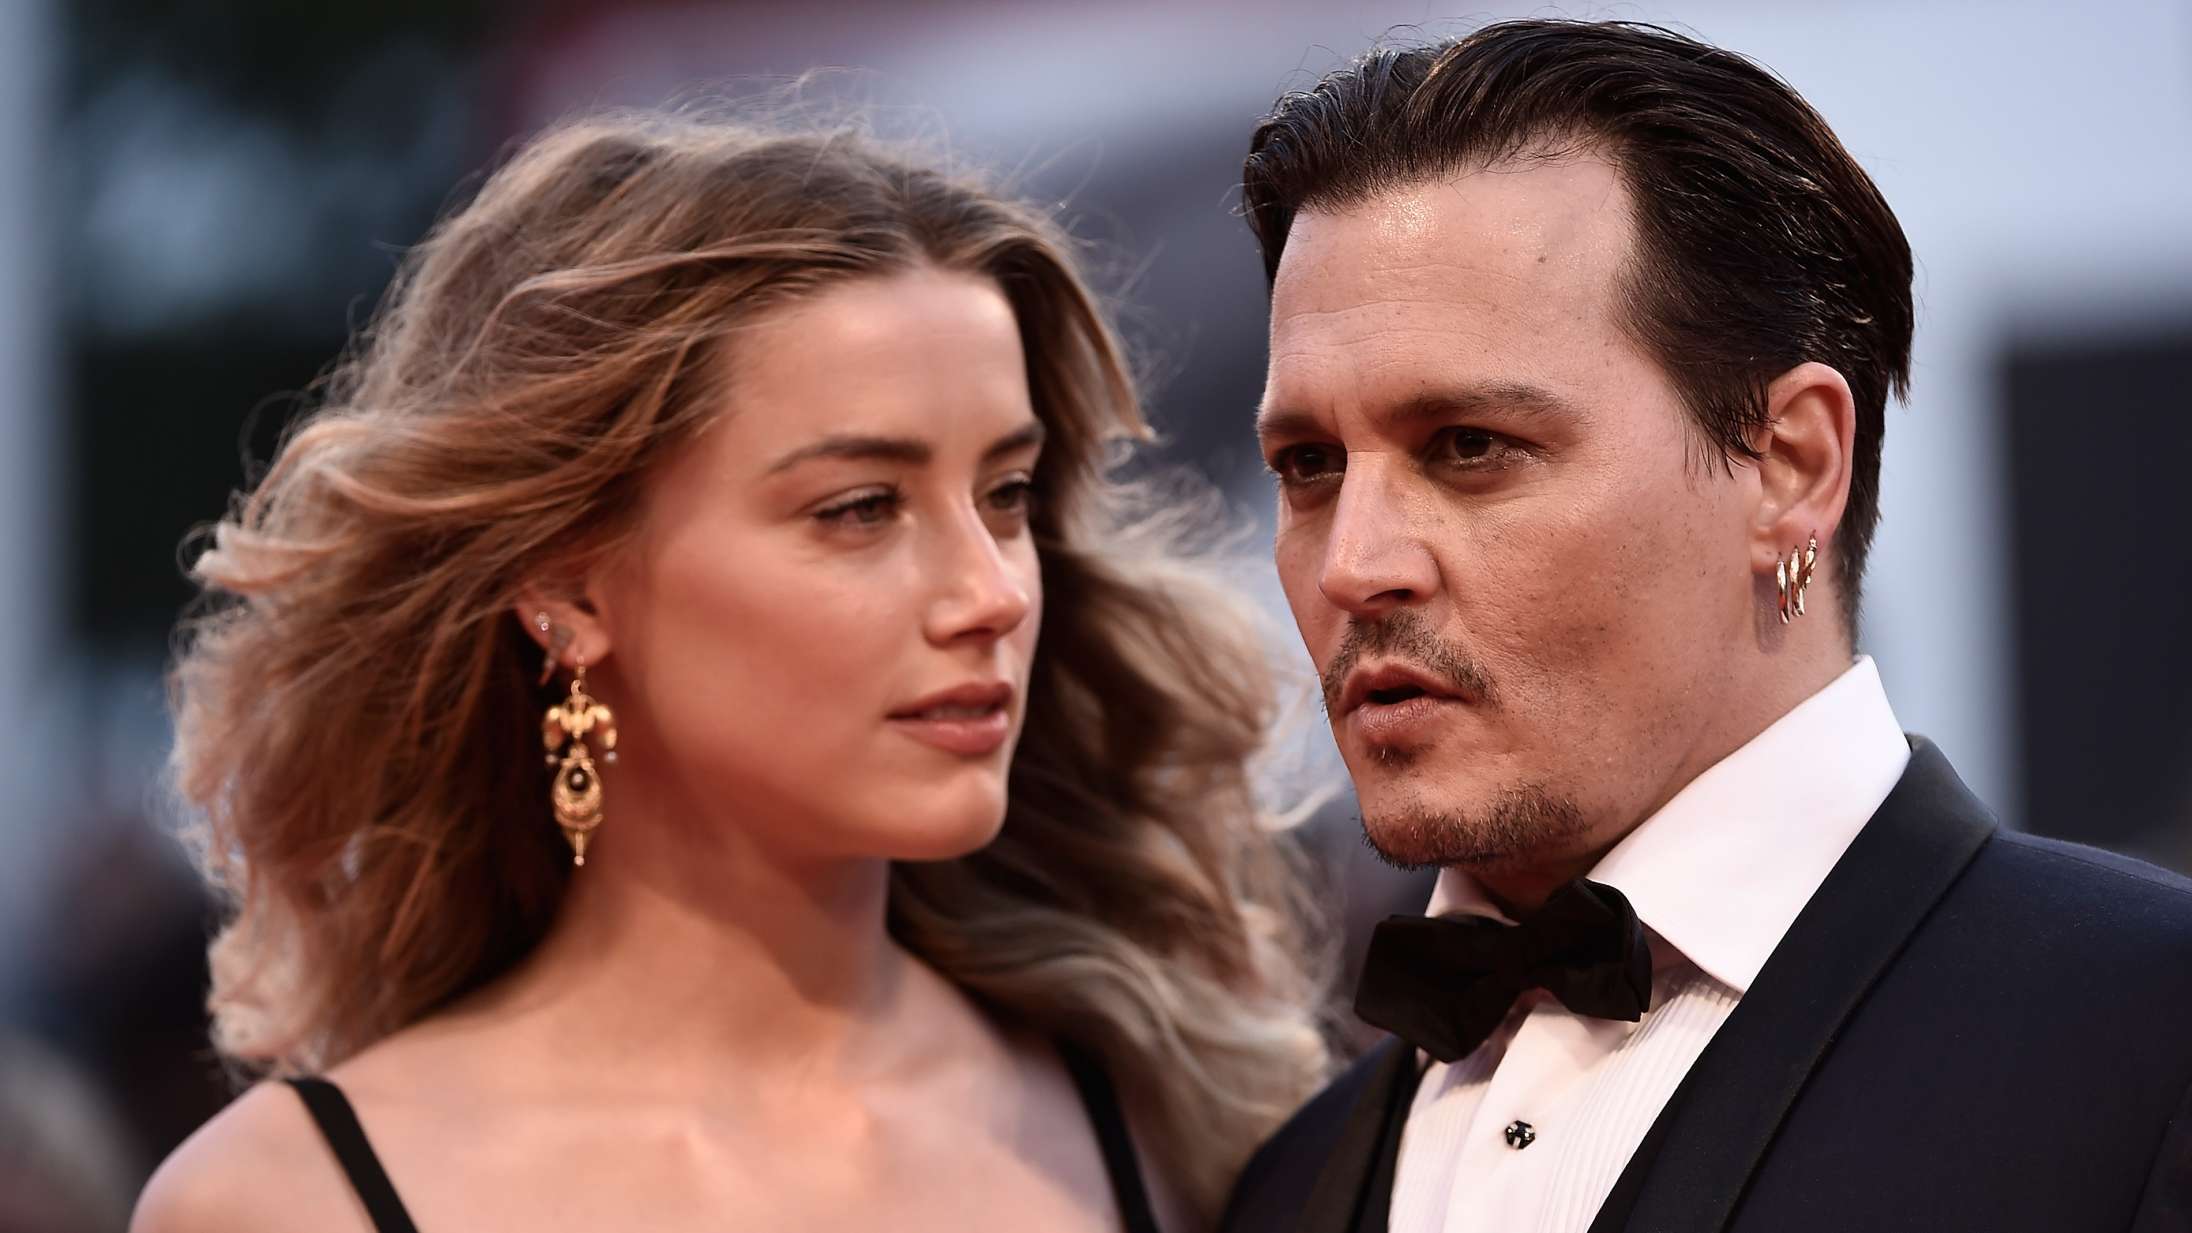 Amber Heard udtaler sig før millionretssag mod Johnny Depp: »Jeg har altid fastholdt kærligheden til Johnny«